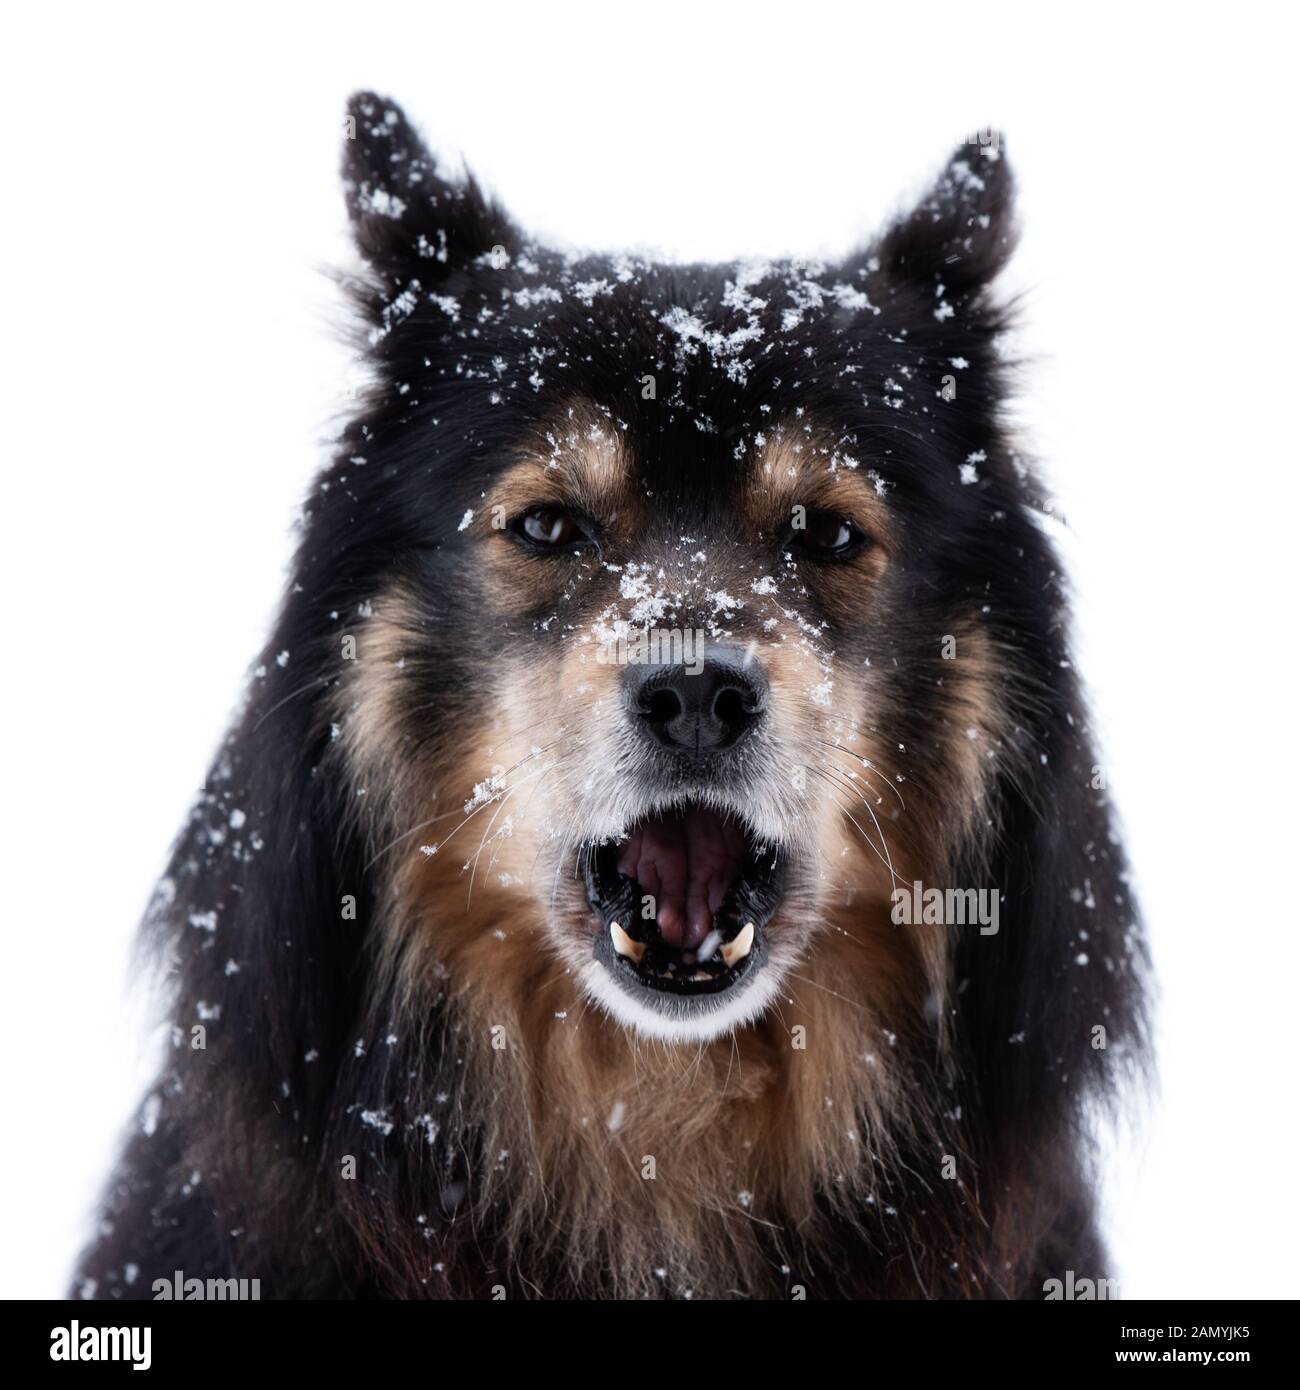 Lapphund finlandese in nevicata e ululati, la testa di fronte alla fotocamera contro uno sfondo bianco. Foto Stock